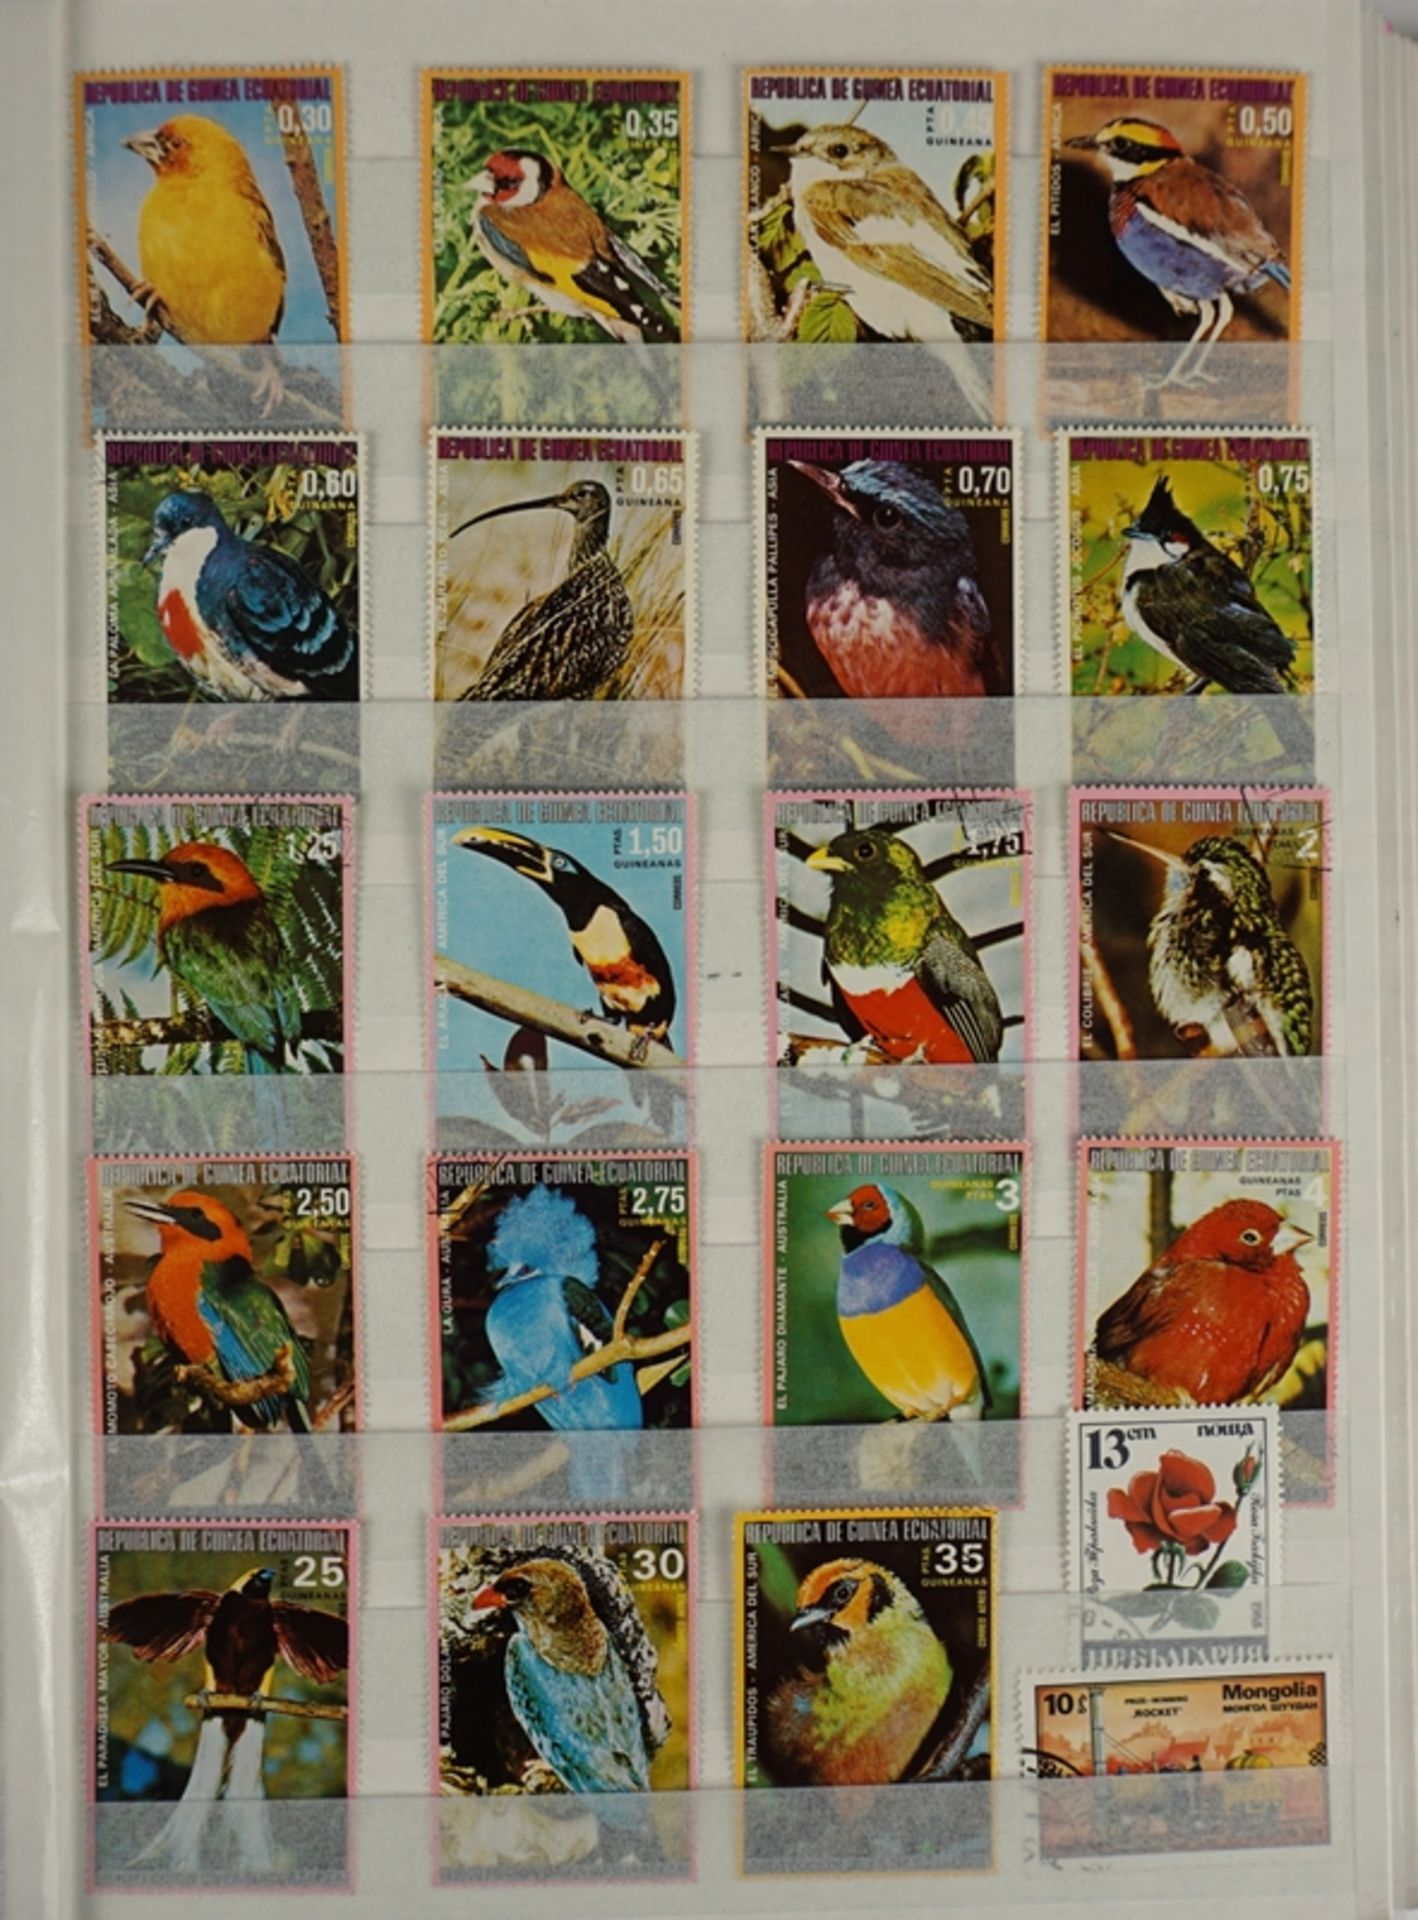 Sammlung von ca. 2.300 Briefmarken alle Welt, unterschiedliche Motive, im Steckalbum - Image 2 of 5